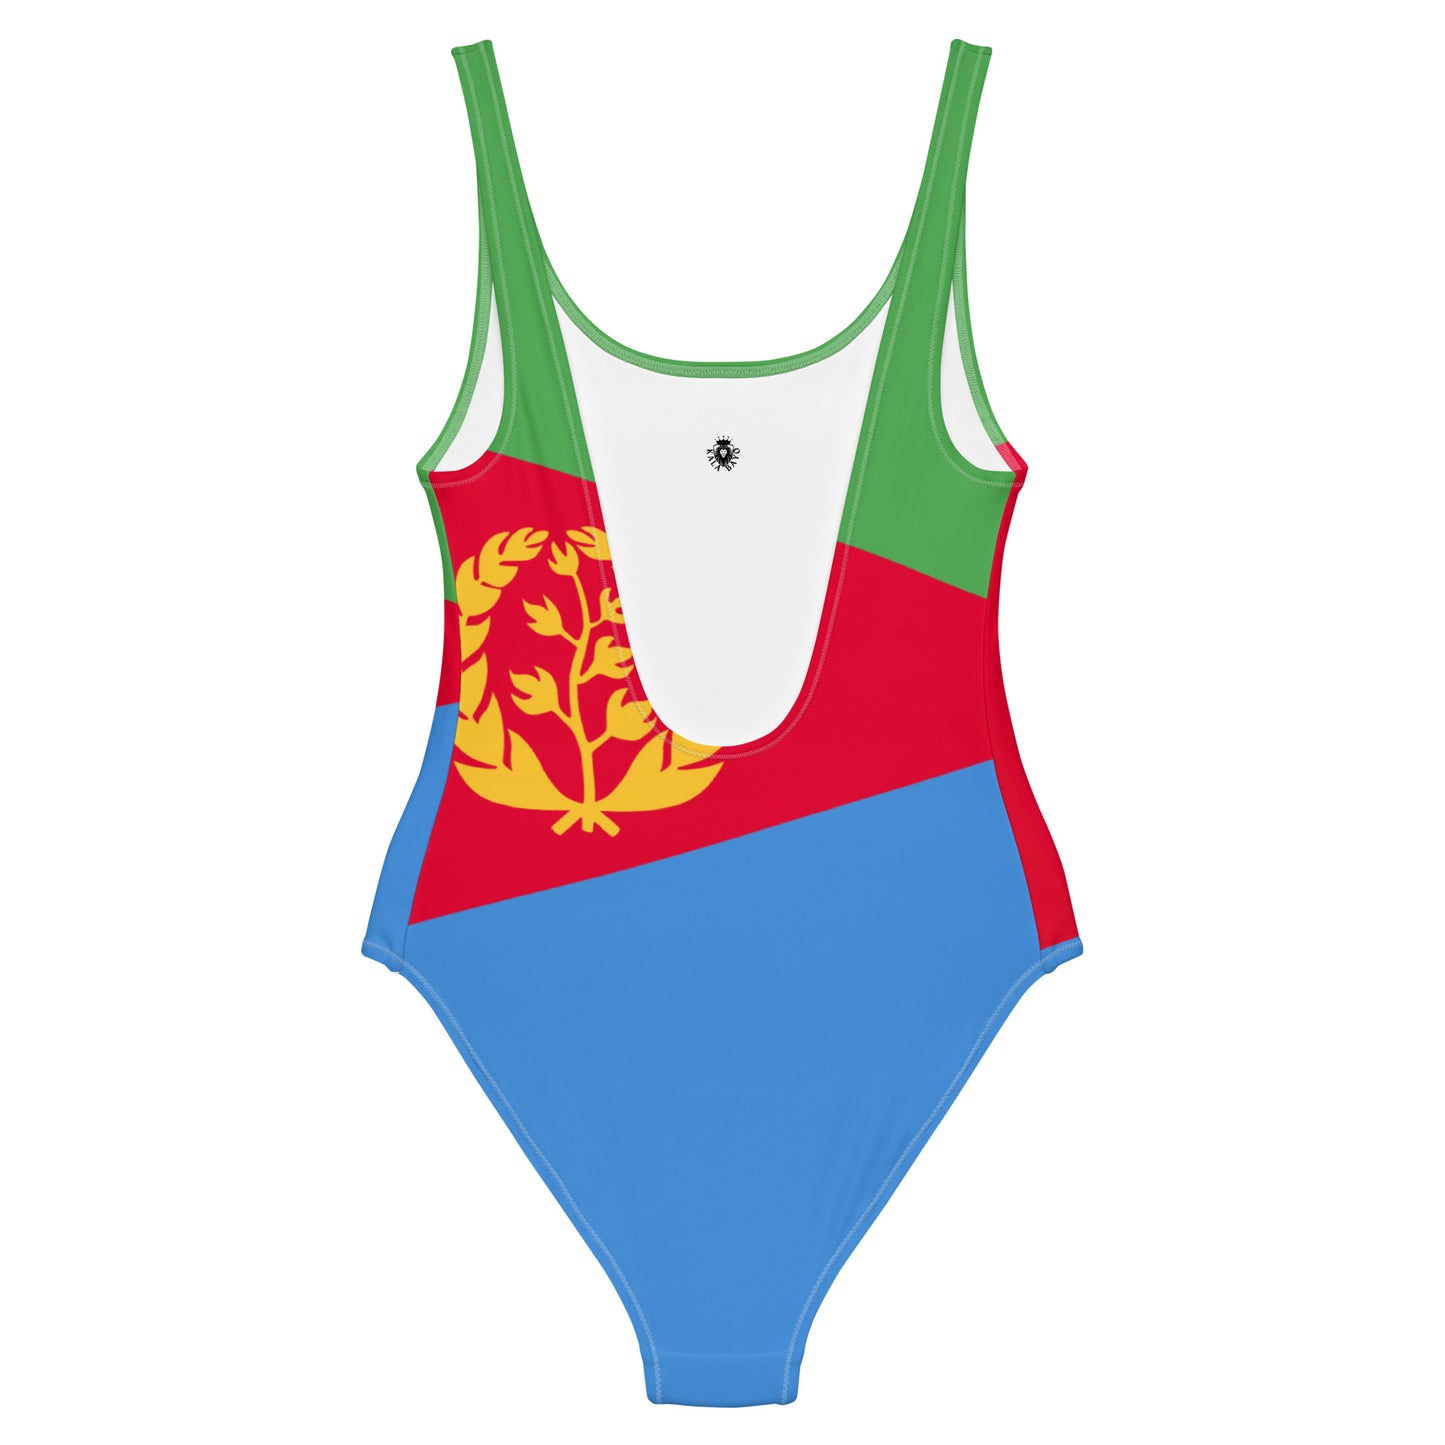 Eritrea One-Piece Swimsuit